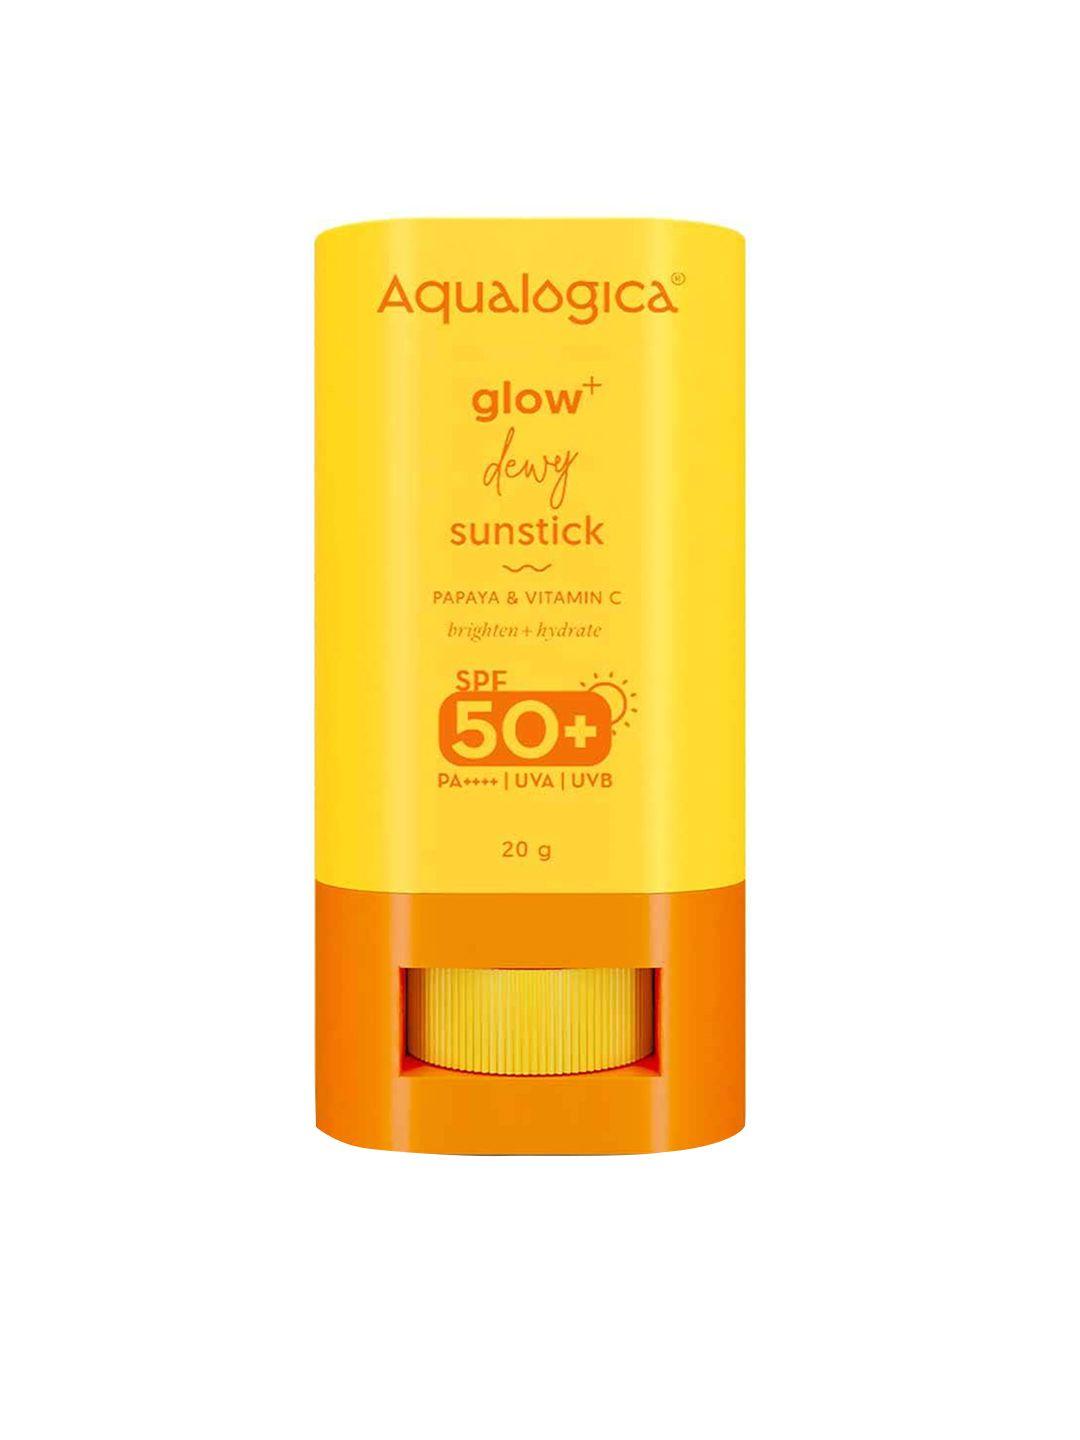 aqualogica glow+ dewy spf50+ sunstick with papaya & vitamin c - 20g